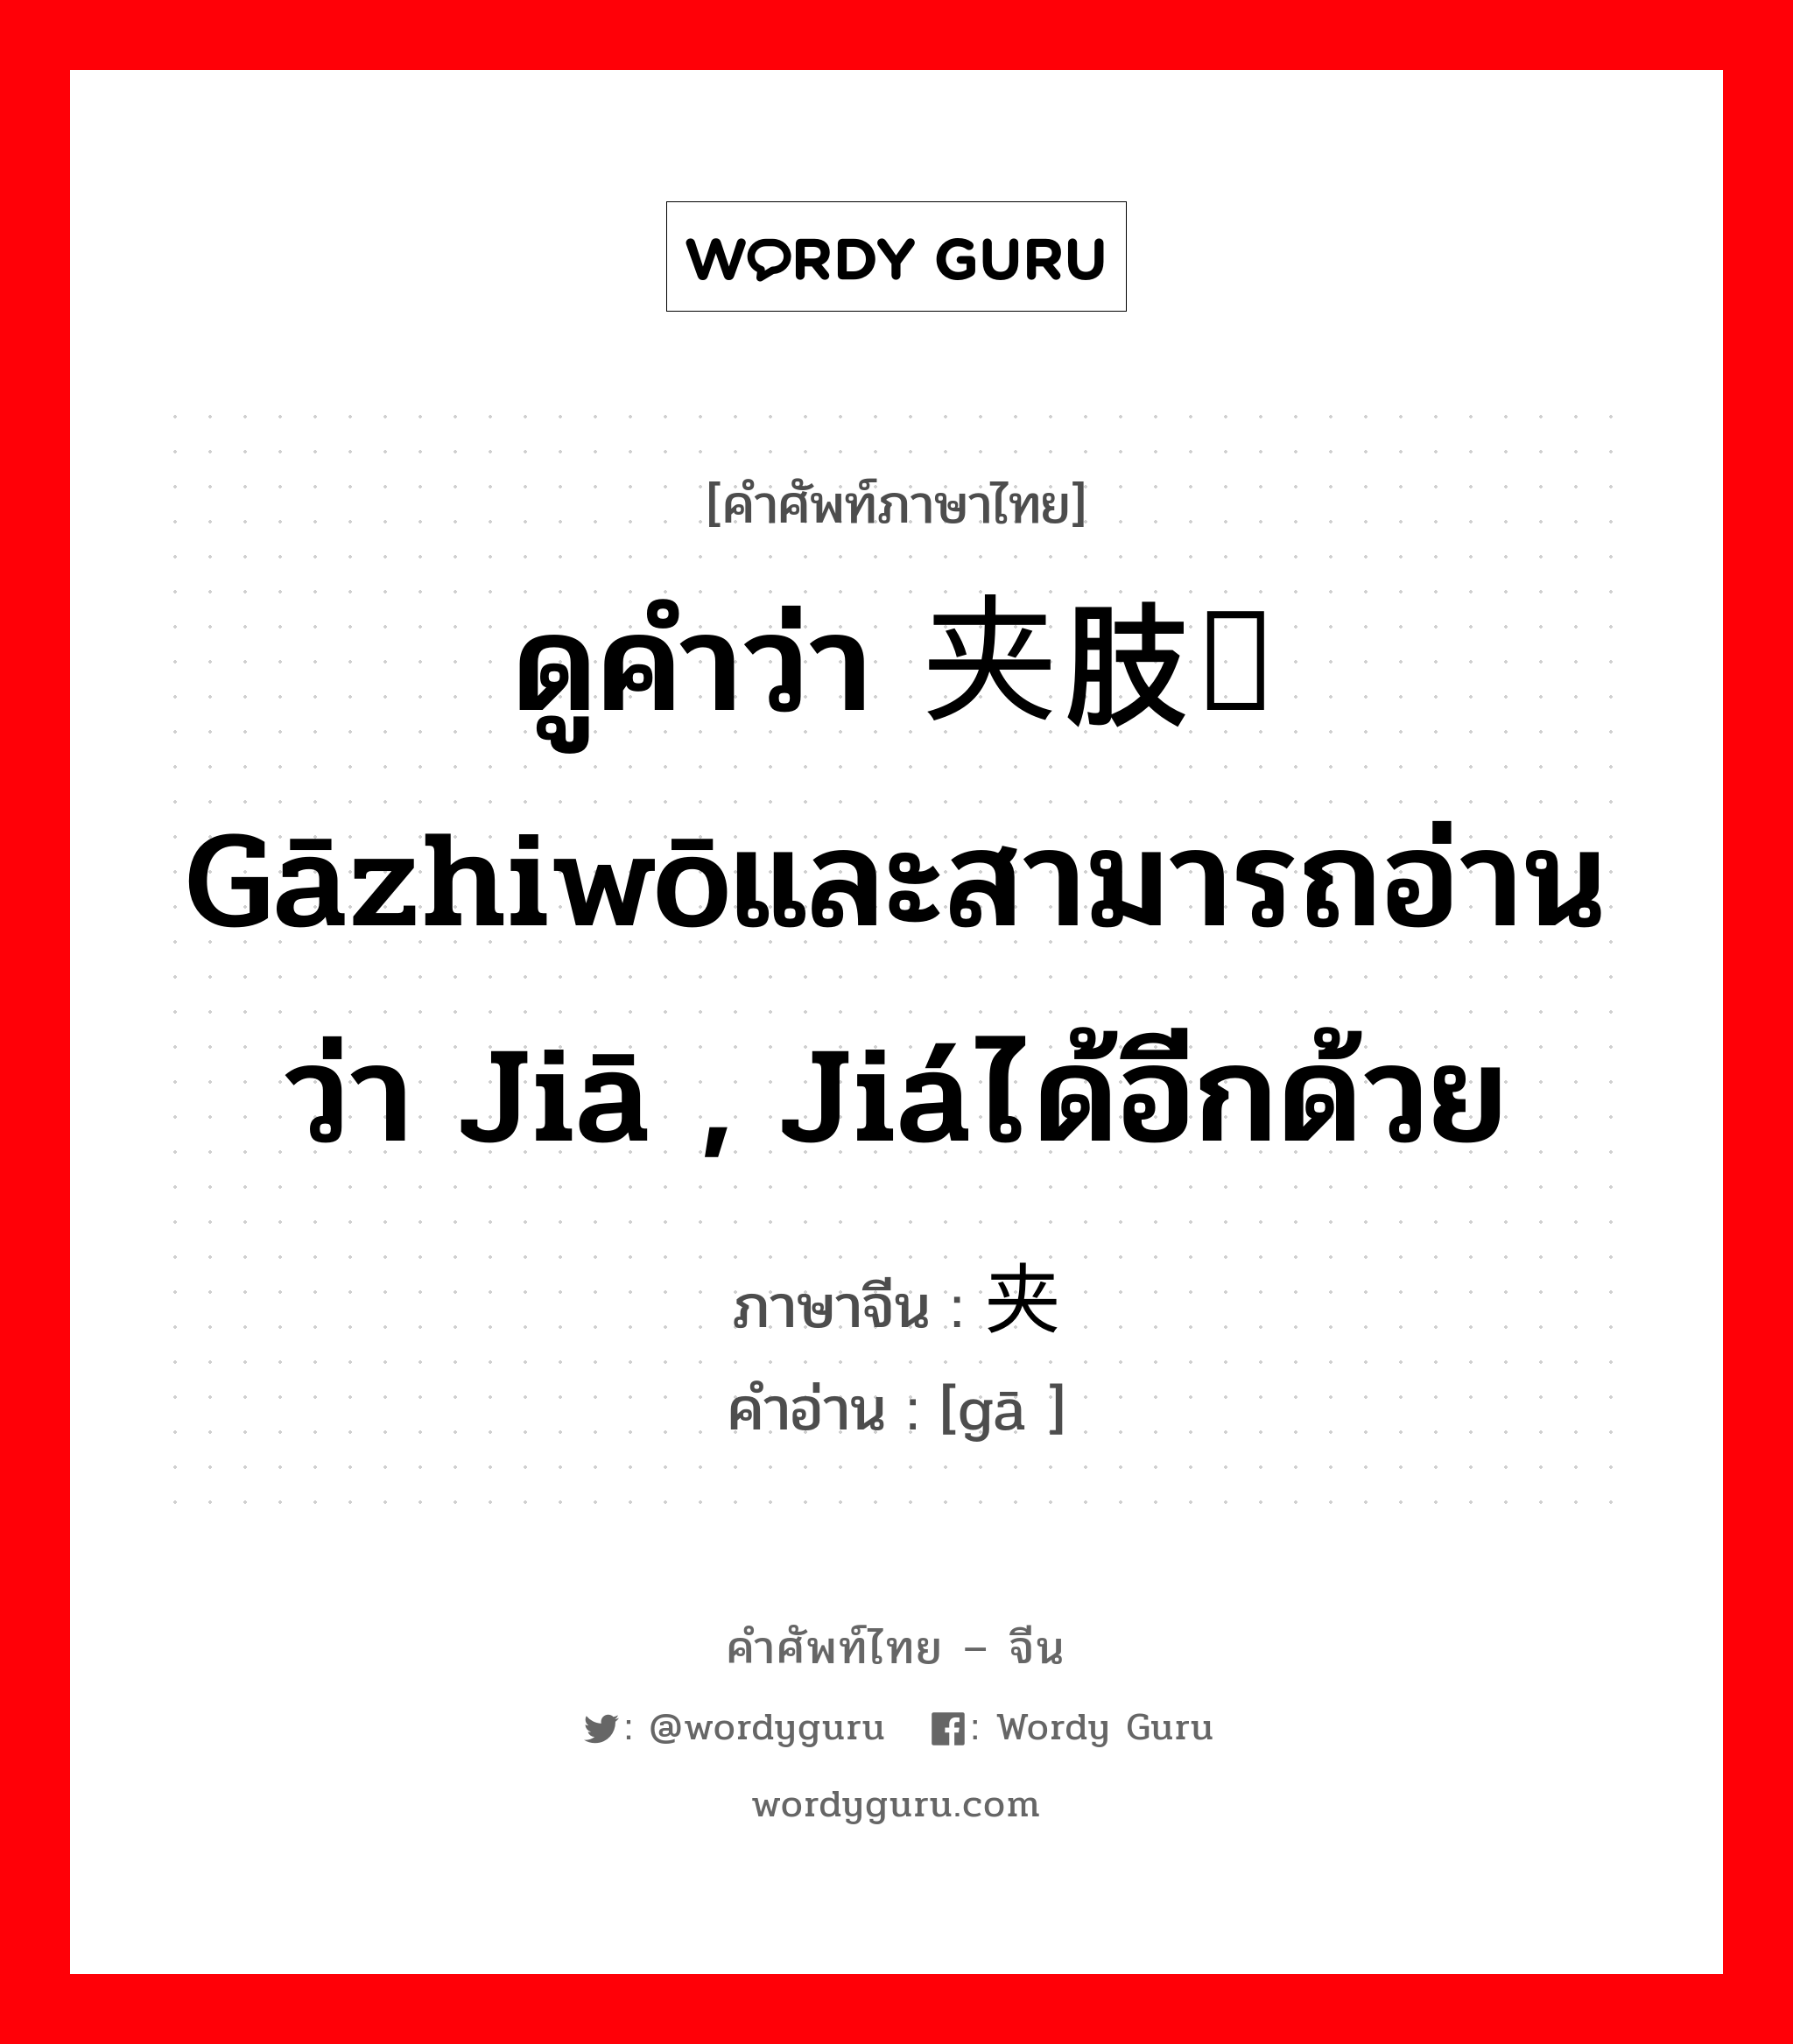 ดูคำว่า 夹肢窝 gāzhiwōและสามารถอ่านว่า jiā , jiáได้อีกด้วย ภาษาจีนคืออะไร, คำศัพท์ภาษาไทย - จีน ดูคำว่า 夹肢窝 gāzhiwōและสามารถอ่านว่า jiā , jiáได้อีกด้วย ภาษาจีน 夹 คำอ่าน [gā ]